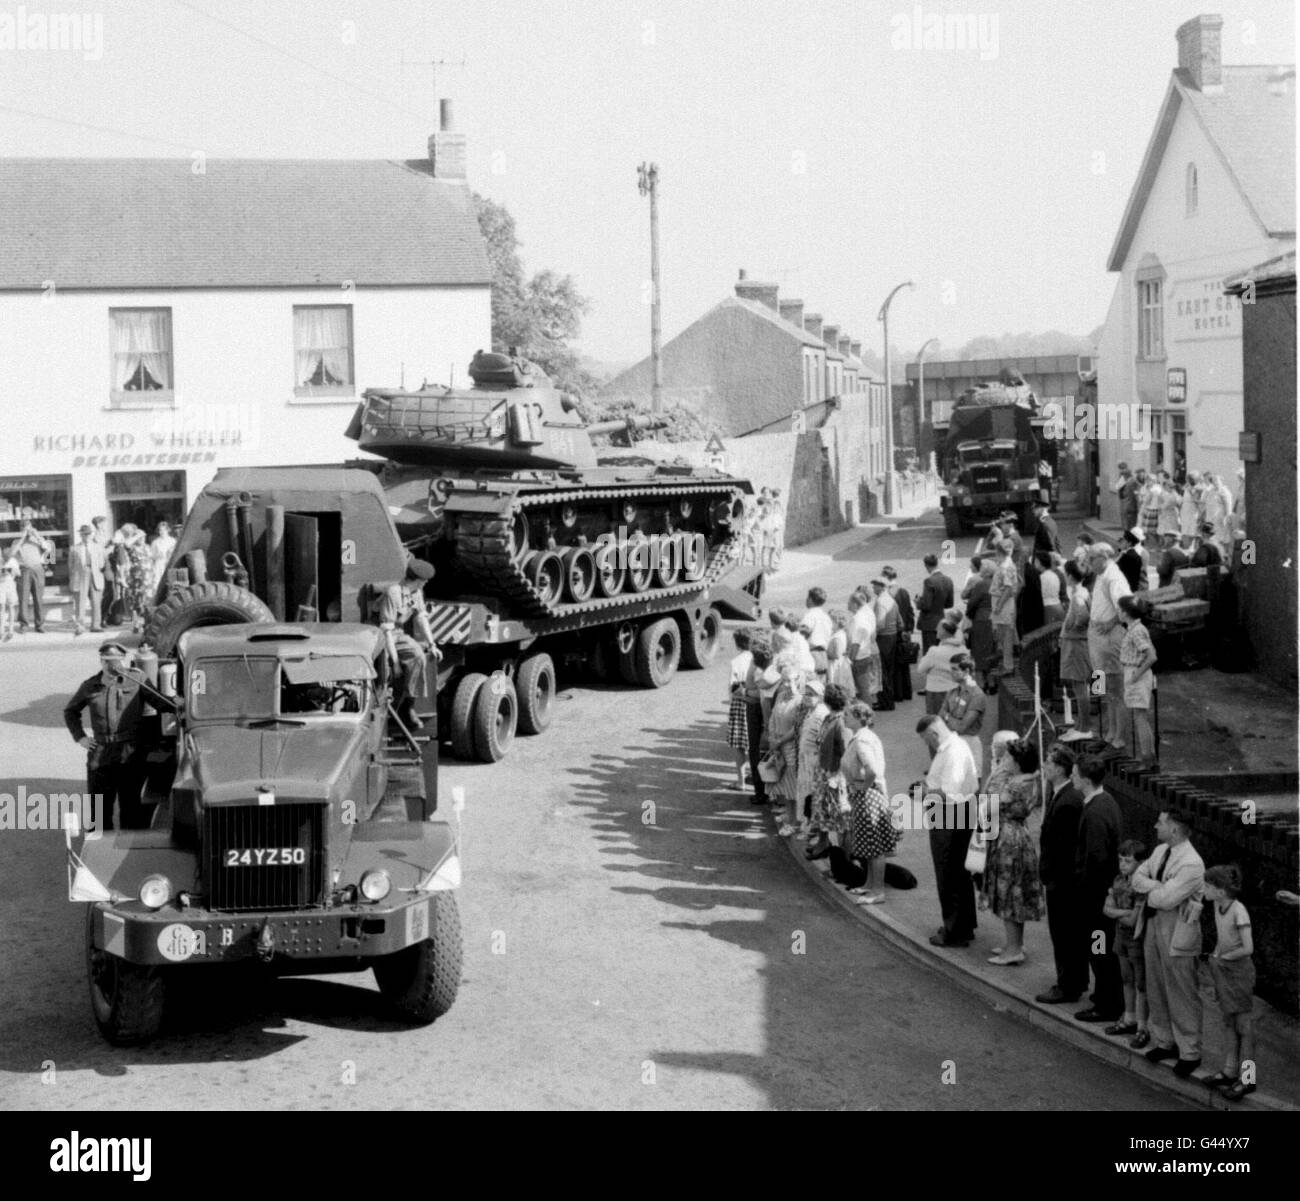 Akte vom 31. August 1961 mit deutschen Panzern, beladen auf Schwertransportern, donnernd durch die Straßen von Pembroke, Südwales, auf dem Weg zum Lager Castlemartin. Deutsche Panzerbesatzungen verlassen heute (Dienstag) einen ihrer alten Leoparden-Panzer Mk 1, um das Ende ihrer 35-jährigen friedlichen Besetzung der Trainingsbereiche in Castlemartin, Pembrokeshire, zu markieren. Der Panzer wurde auf dem Stützpunkt von West Wales enthüllt, als sich die britische Armee und die deutsche Bundesarmee zu einer Parade, einem Gottesdienst und einem letzten Abschied versammelten. Siehe PA Story DEFENSE Tank. NUR IN SCHWARZWEISS VERFÜGBAR. Stockfoto